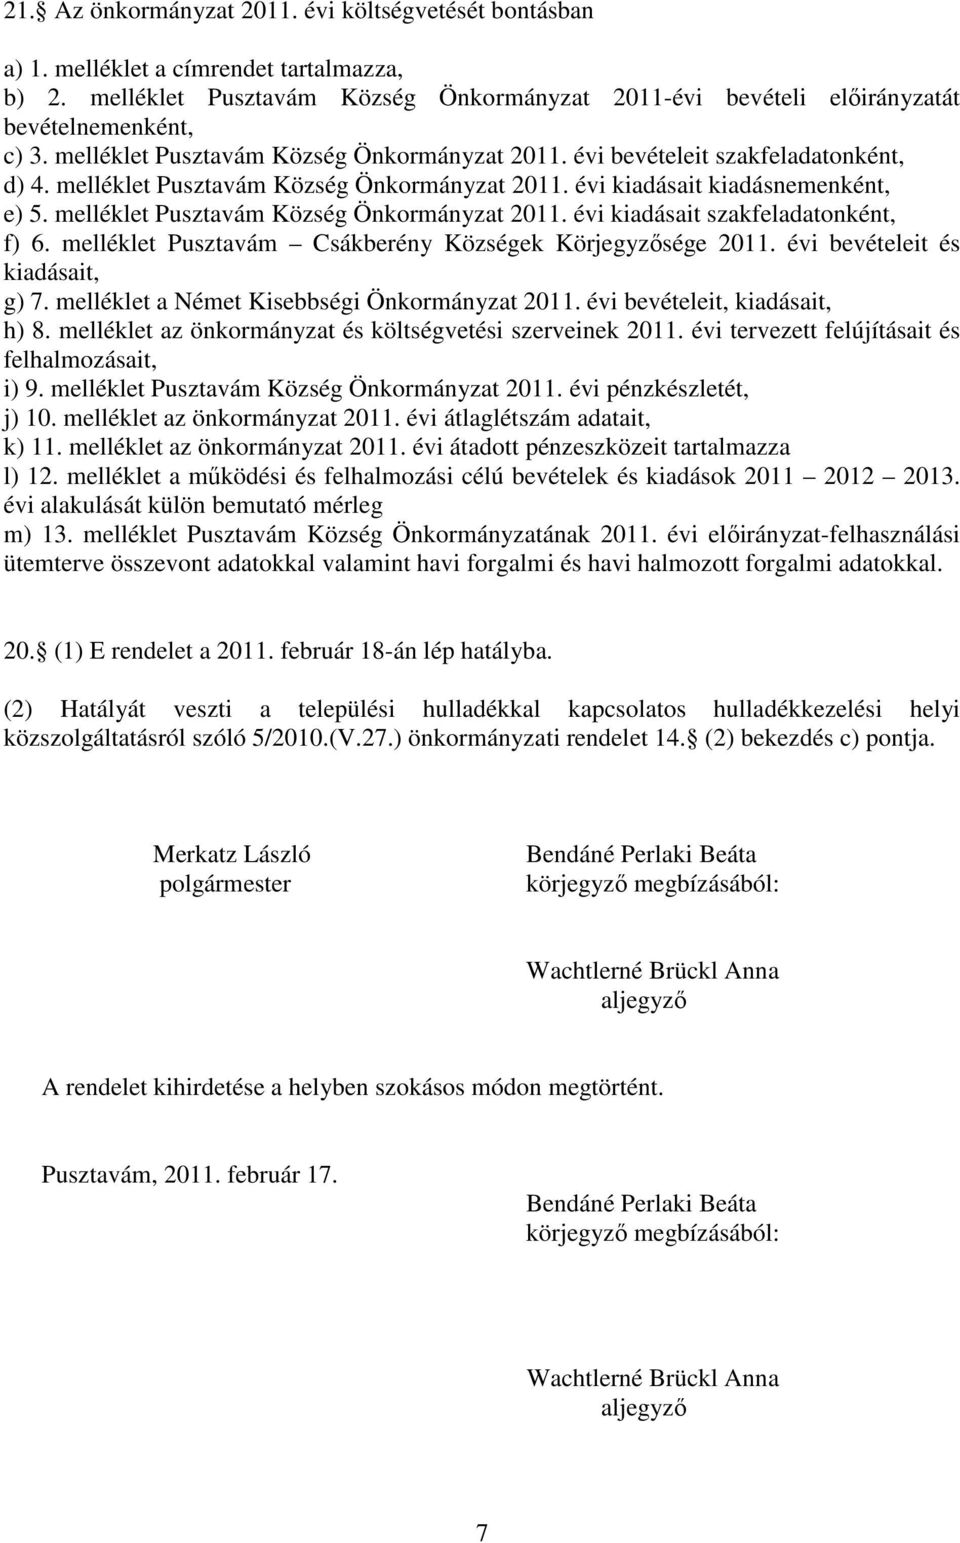 melléklet Pusztavám Község Önkormányzat 2011. évi kiadásait szakfeladatonként, f) 6. melléklet Pusztavám Csákberény Községek Körjegyzősége 2011. évi bevételeit és kiadásait, g) 7.